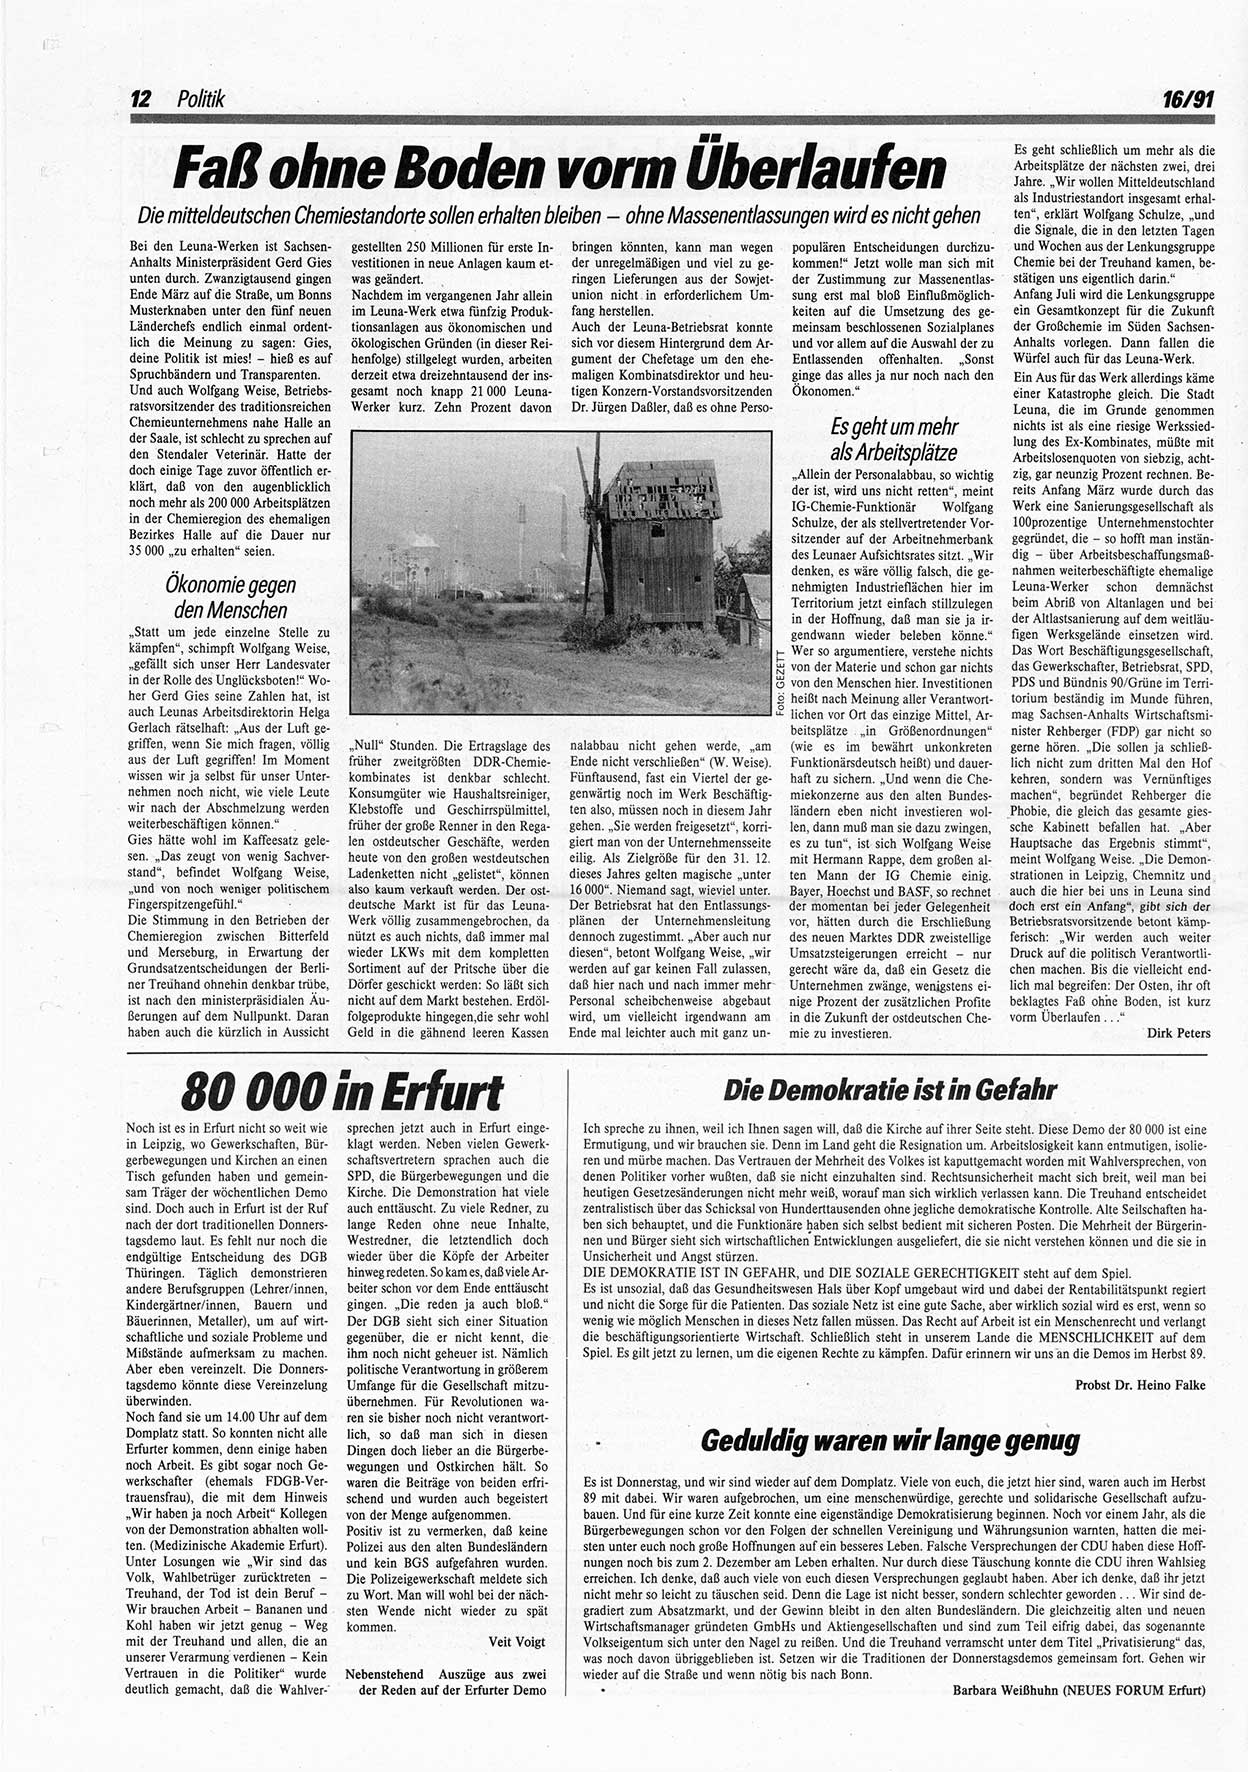 Die Andere, Unabhängige Wochenzeitung für Politik, Kultur und Kunst, Ausgabe 16 vom 17.4.1991, Seite 12 (And. W.-Zg. Ausg. 16 1991, S. 12)